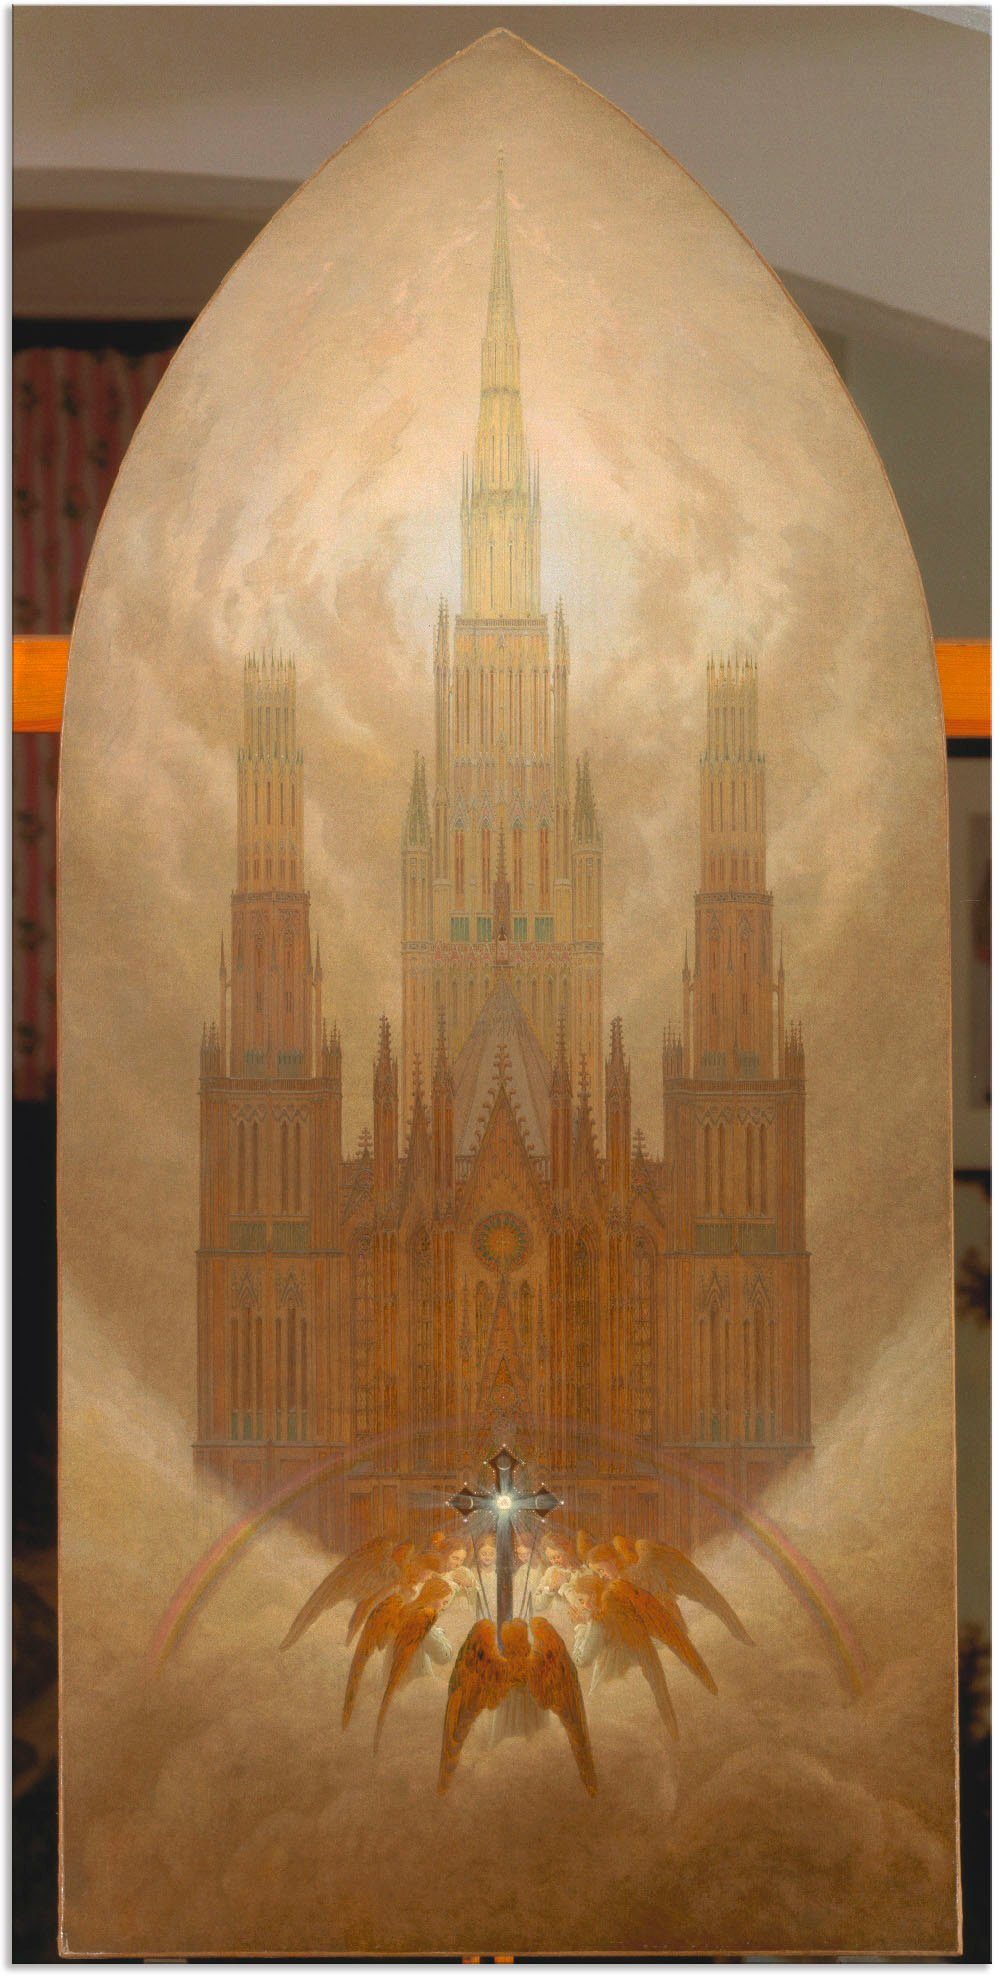 Artland Artprint De kathedraal. Ca. 1818. in vele afmetingen & productsoorten - artprint van aluminium / artprint voor buiten, artprint op linnen, poster, muursticker / wandfolie o